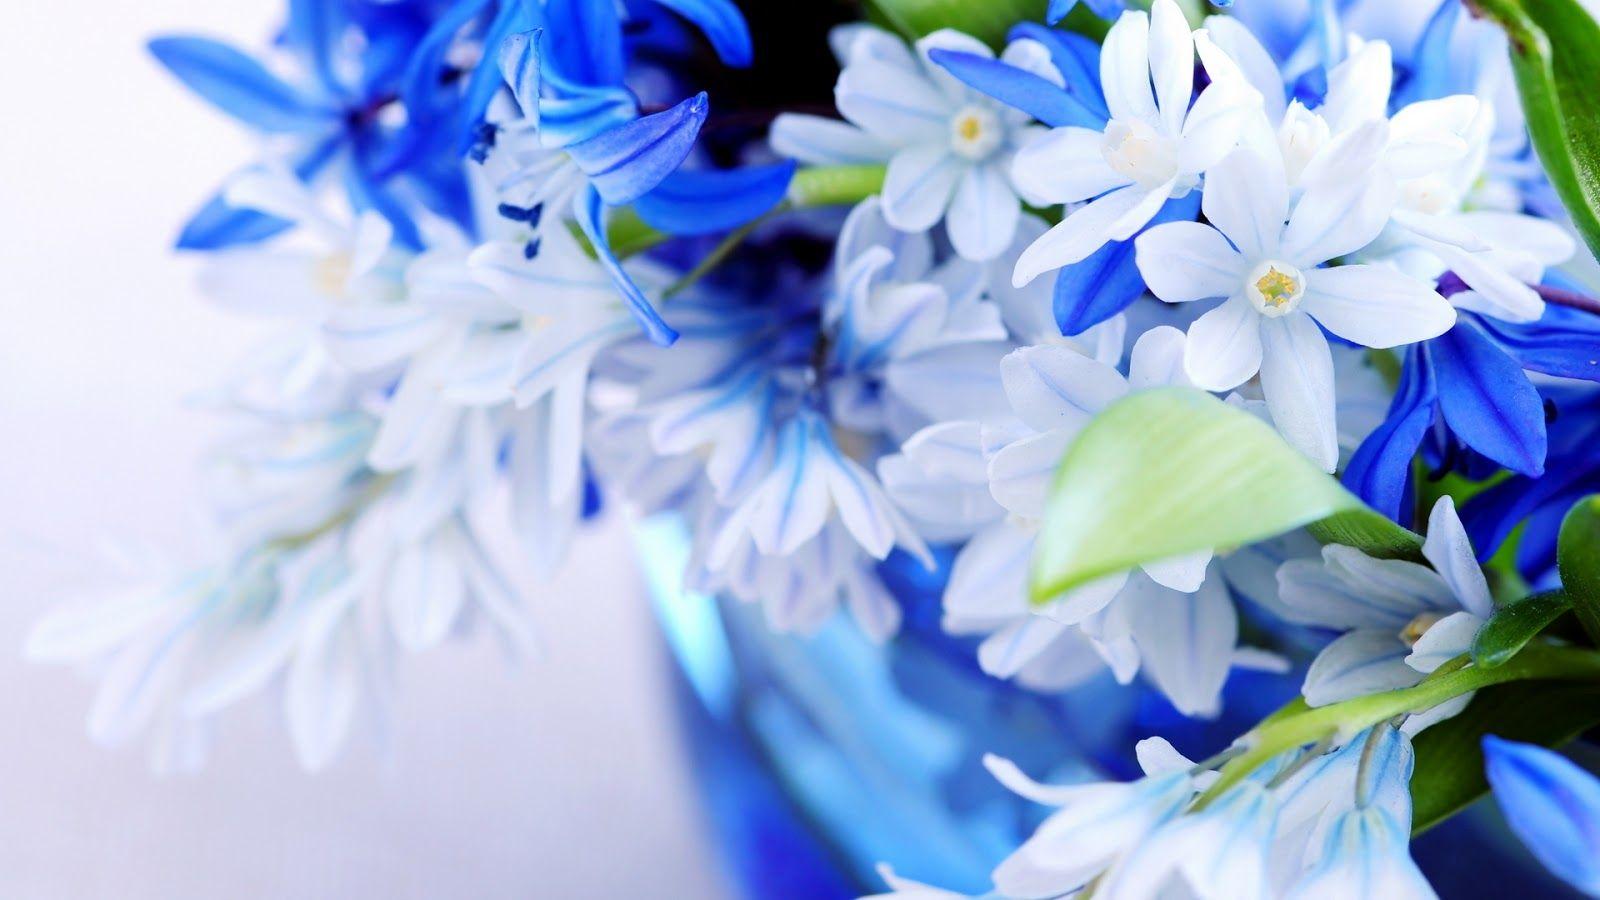 Best Beauty Flowers Wallpaper HD Image Desktop Ideas About